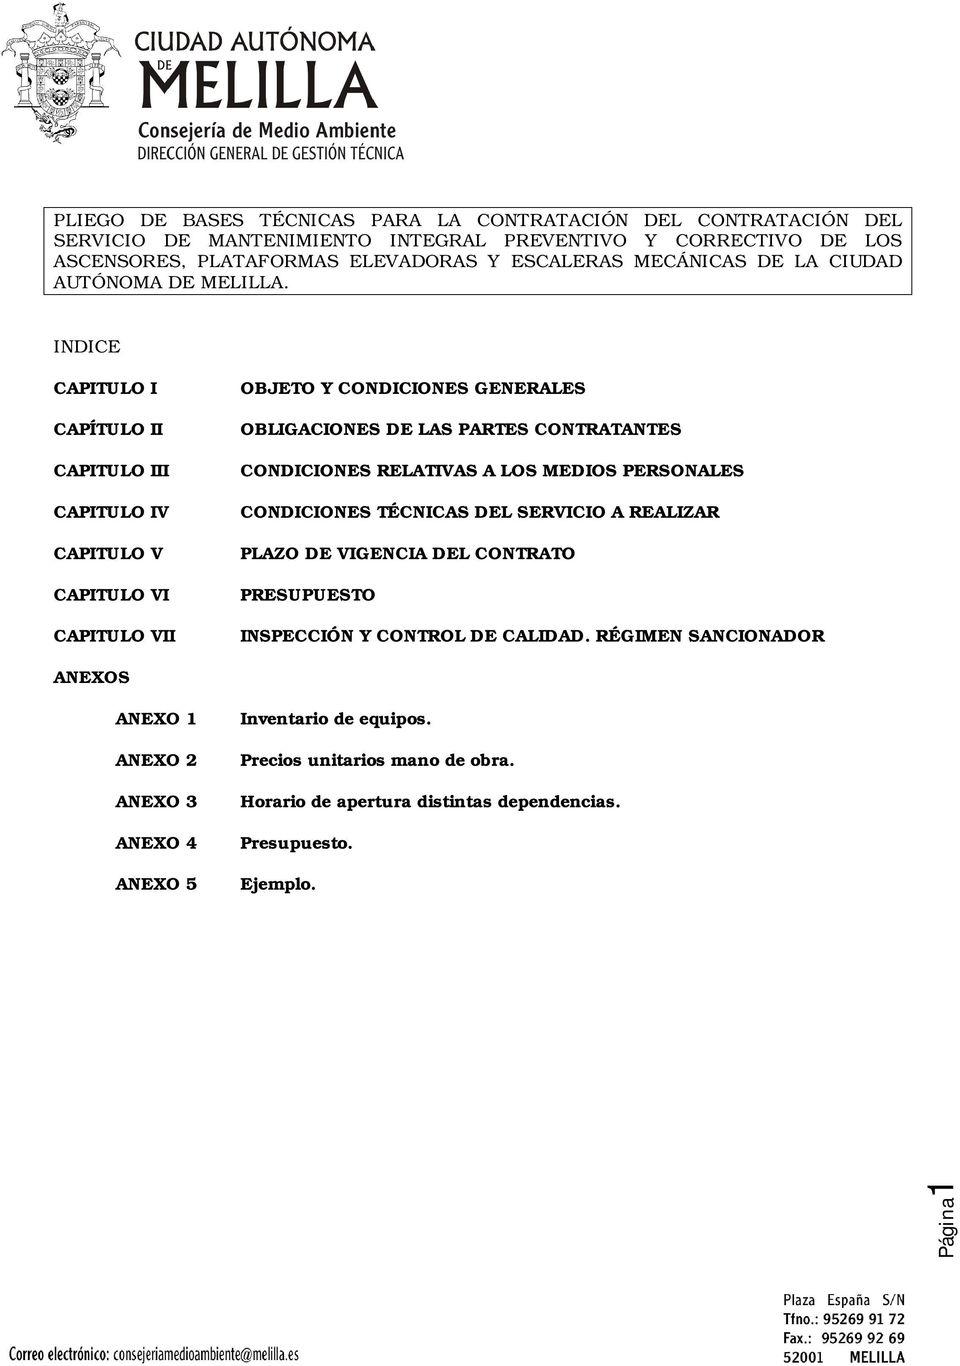 INDICE CAPITULO I CAPÍTULO II CAPITULO III CAPITULO IV CAPITULO V CAPITULO VI CAPITULO VII OBJETO Y CONDICIONES GENERALES OBLIGACIONES DE LAS PARTES CONTRATANTES CONDICIONES RELATIVAS A